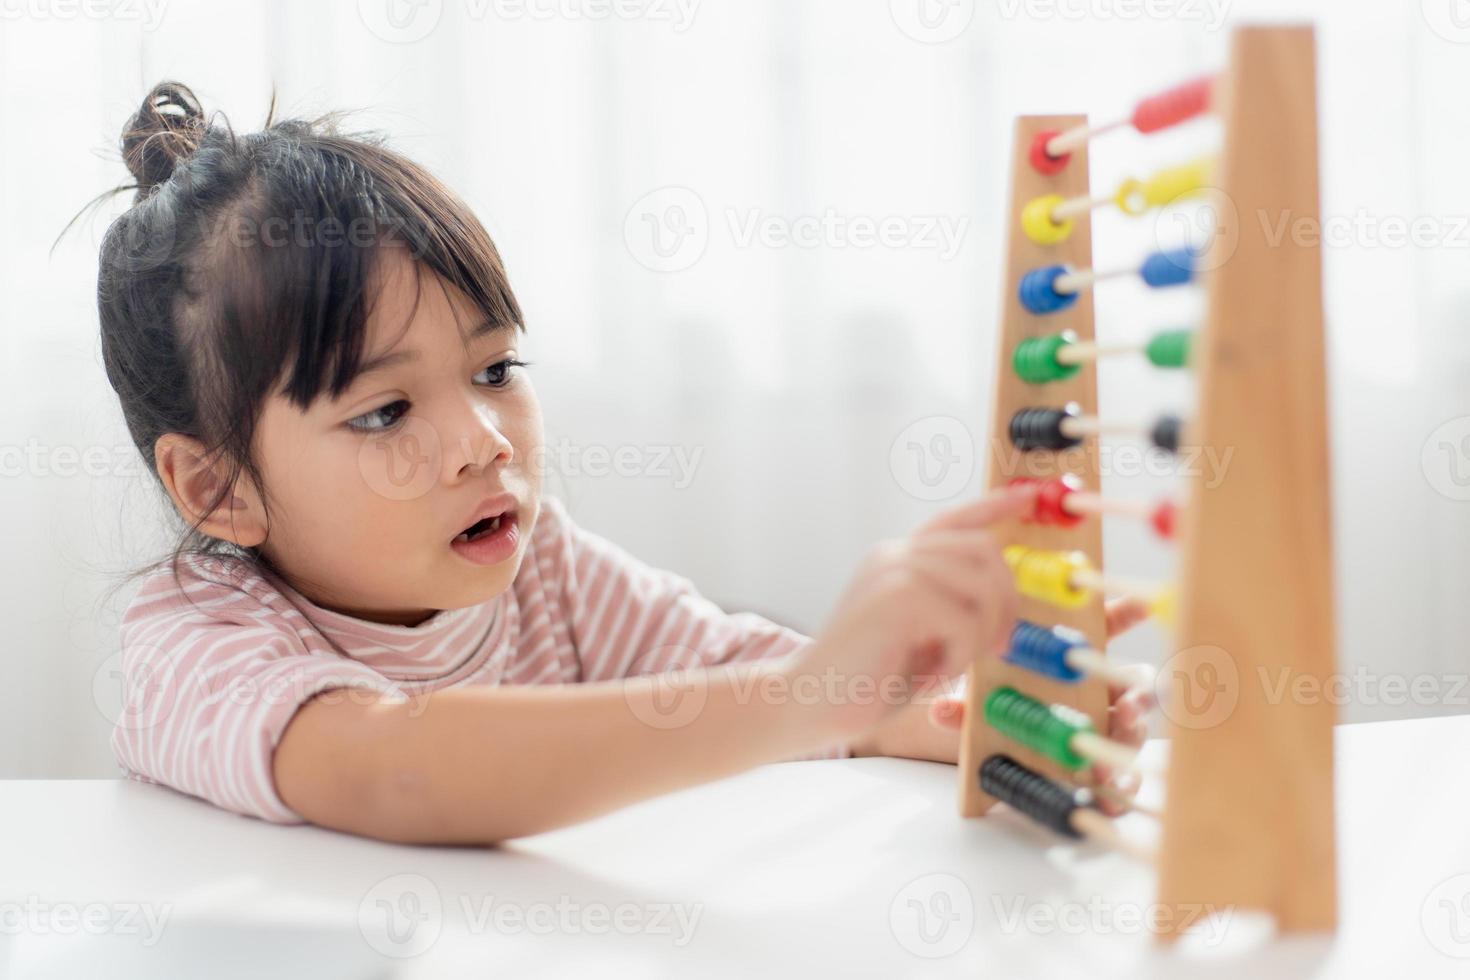 una giovane ragazza asiatica carina sta usando l'abaco con perline colorate per imparare a contare a casa foto